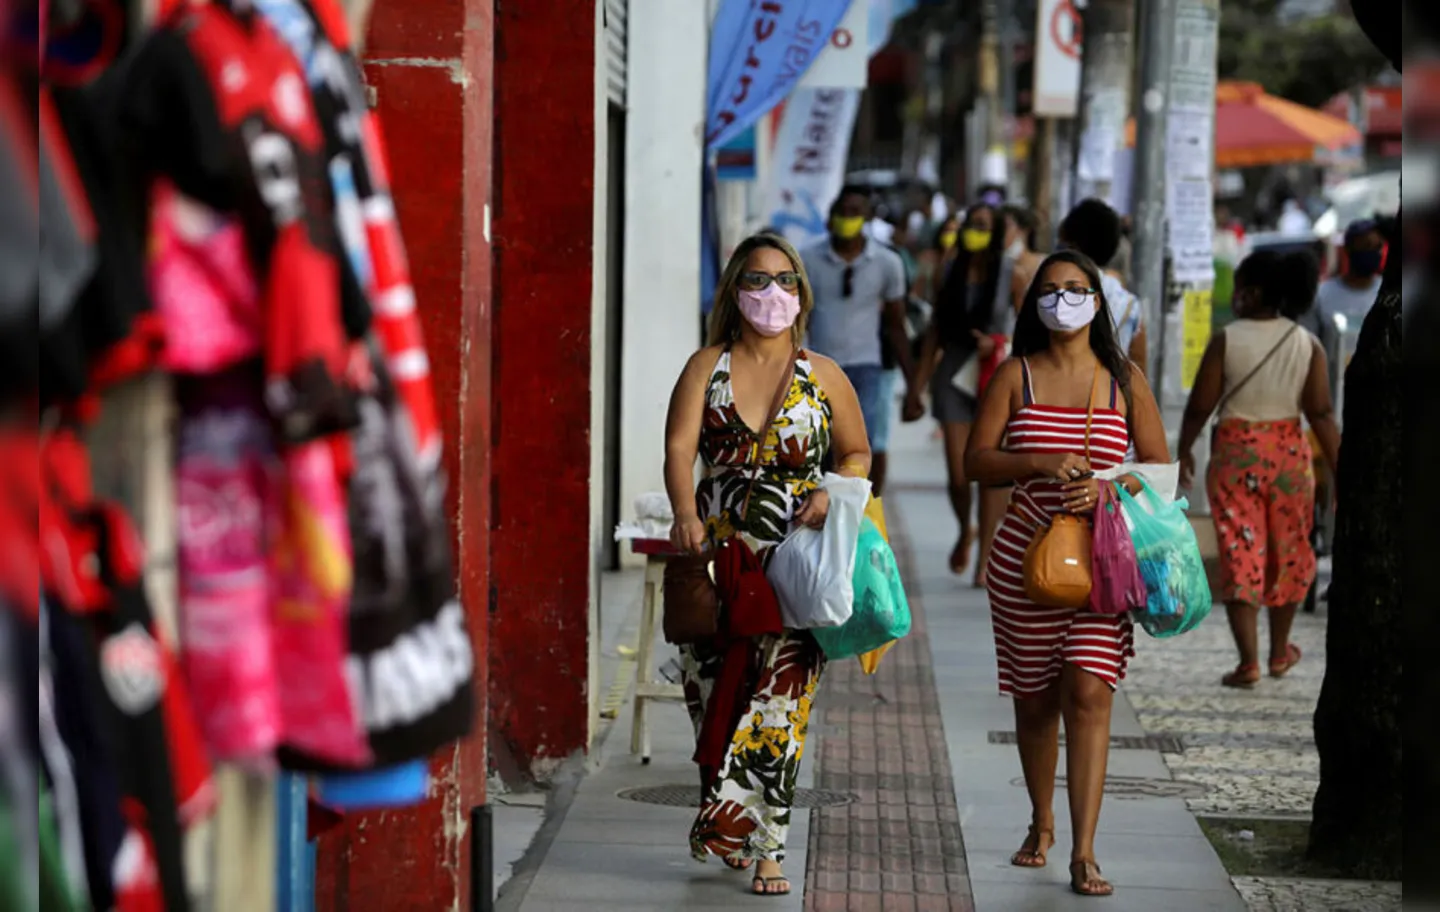 Na Bahia, o governador Rui Costa ainda não decidiu liberar o uso de máscaras